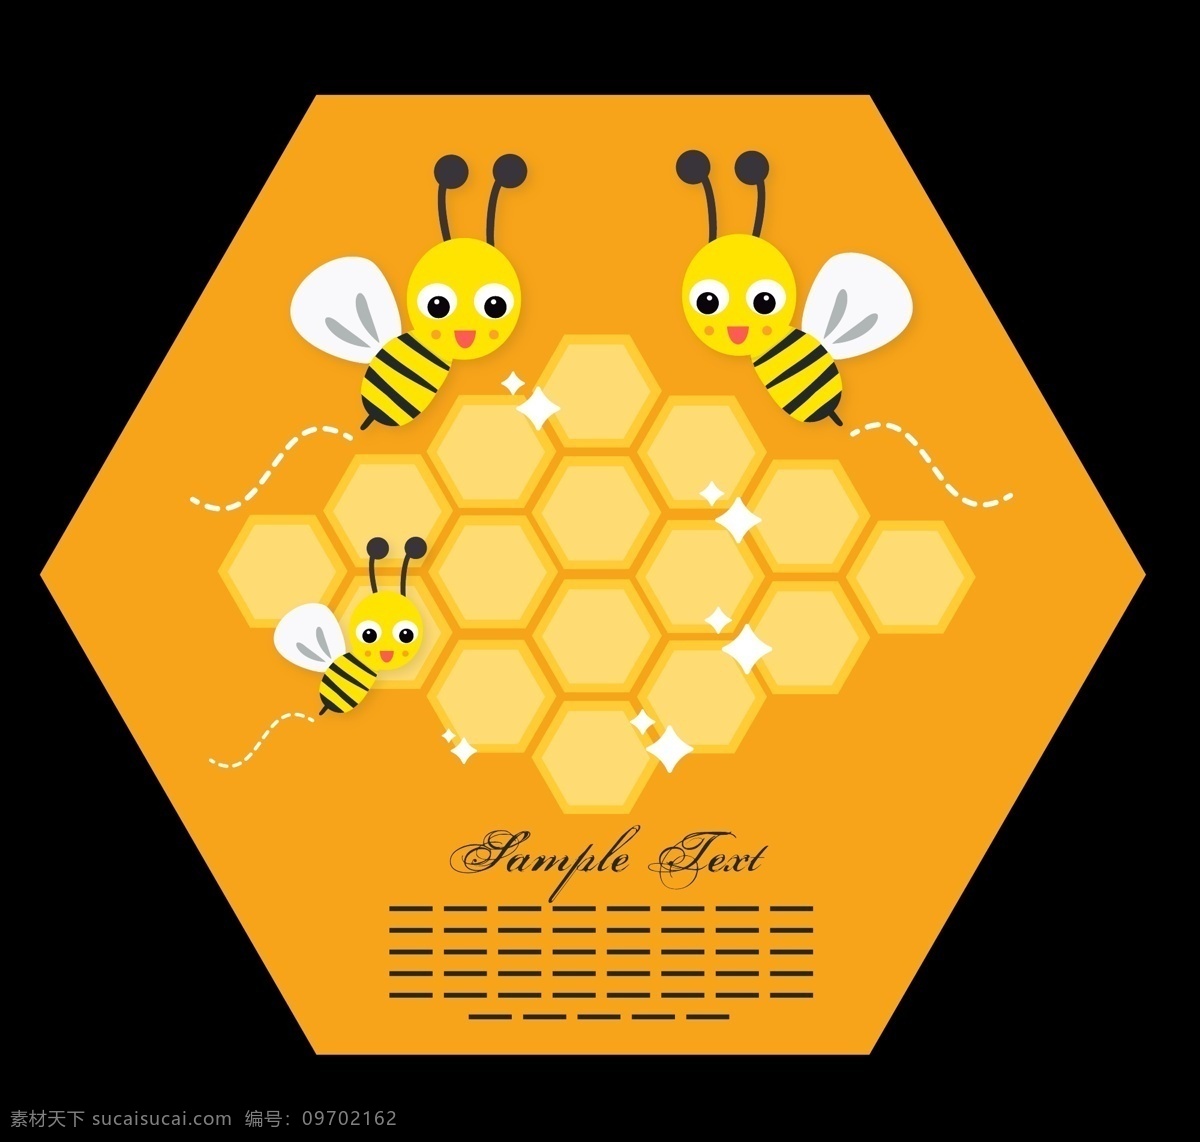 矢量 蜜蜂 插画 蜜蜂插画 矢量蜜蜂 蜂蜜 矢量素材